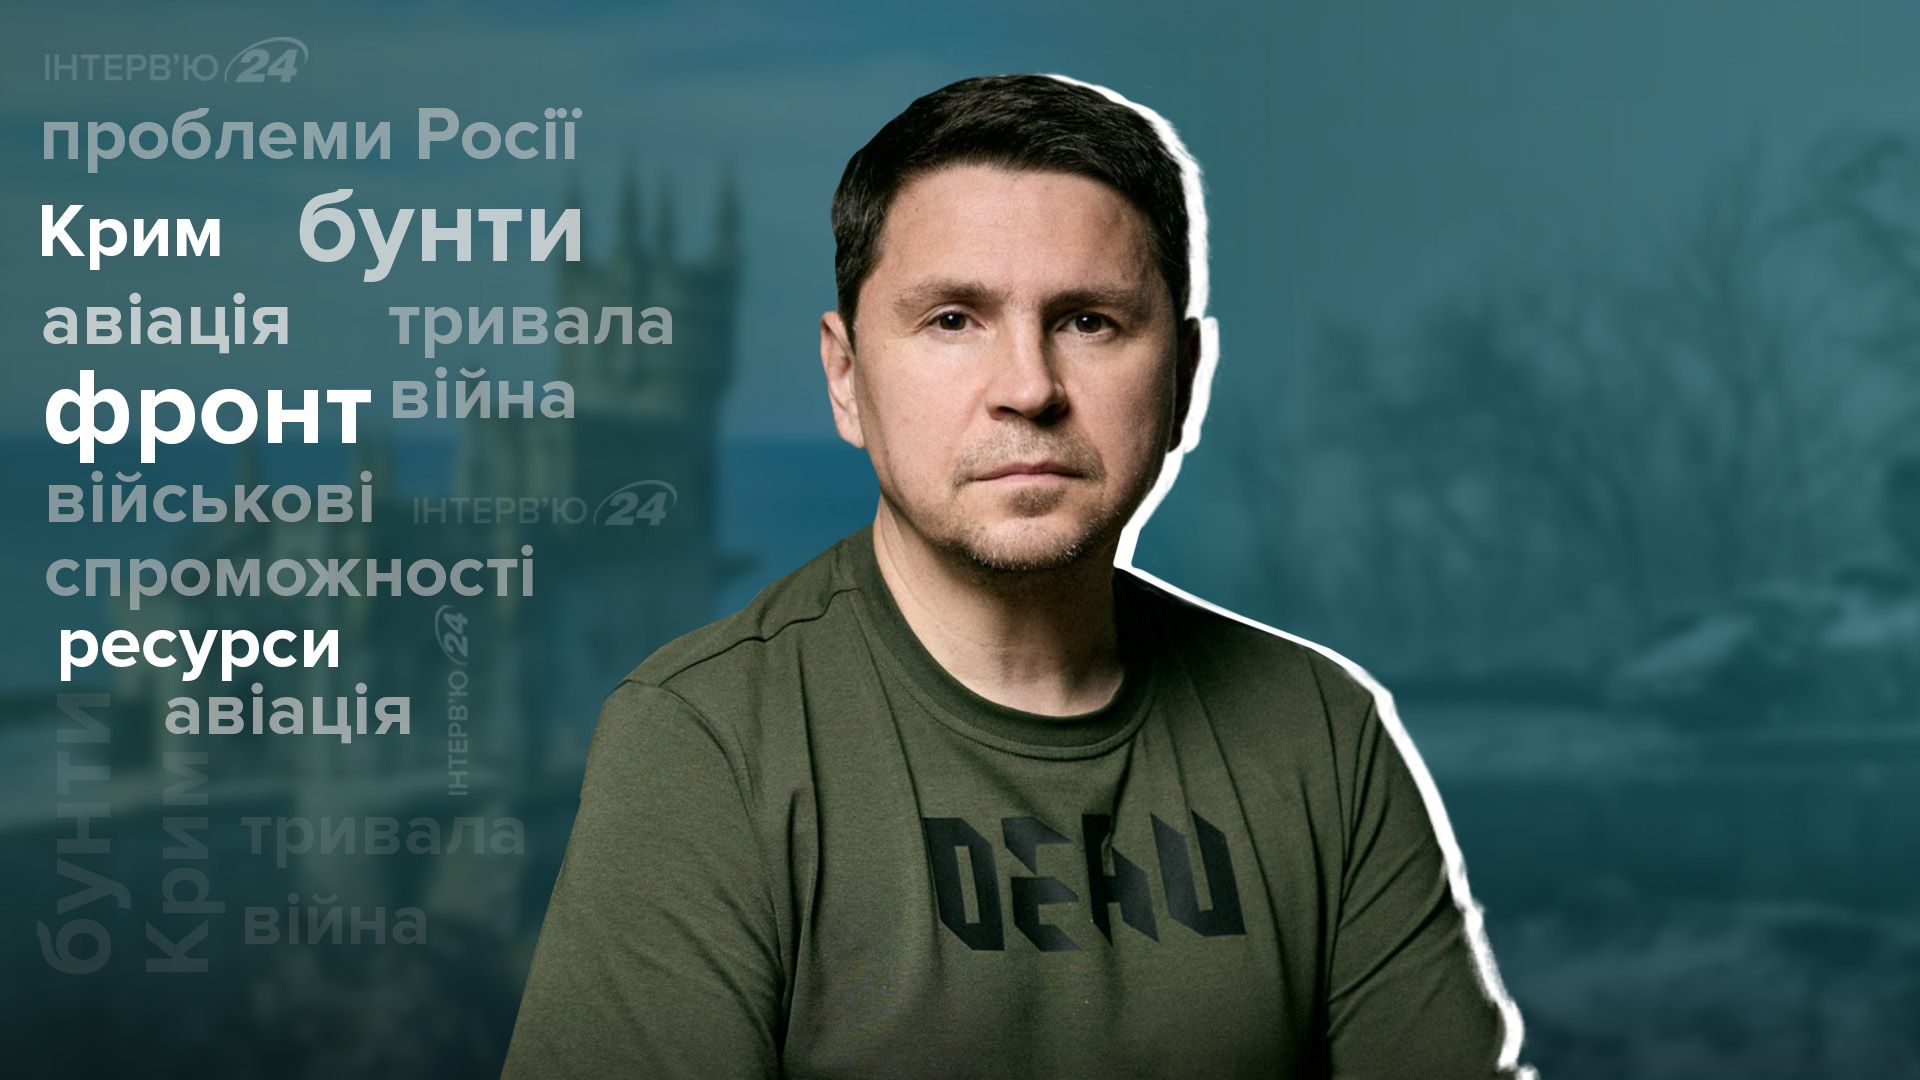 Протести в Росії - Подоляк сказав, що пришвидшить руйнування Росії - інтерв'ю - 24 Канал